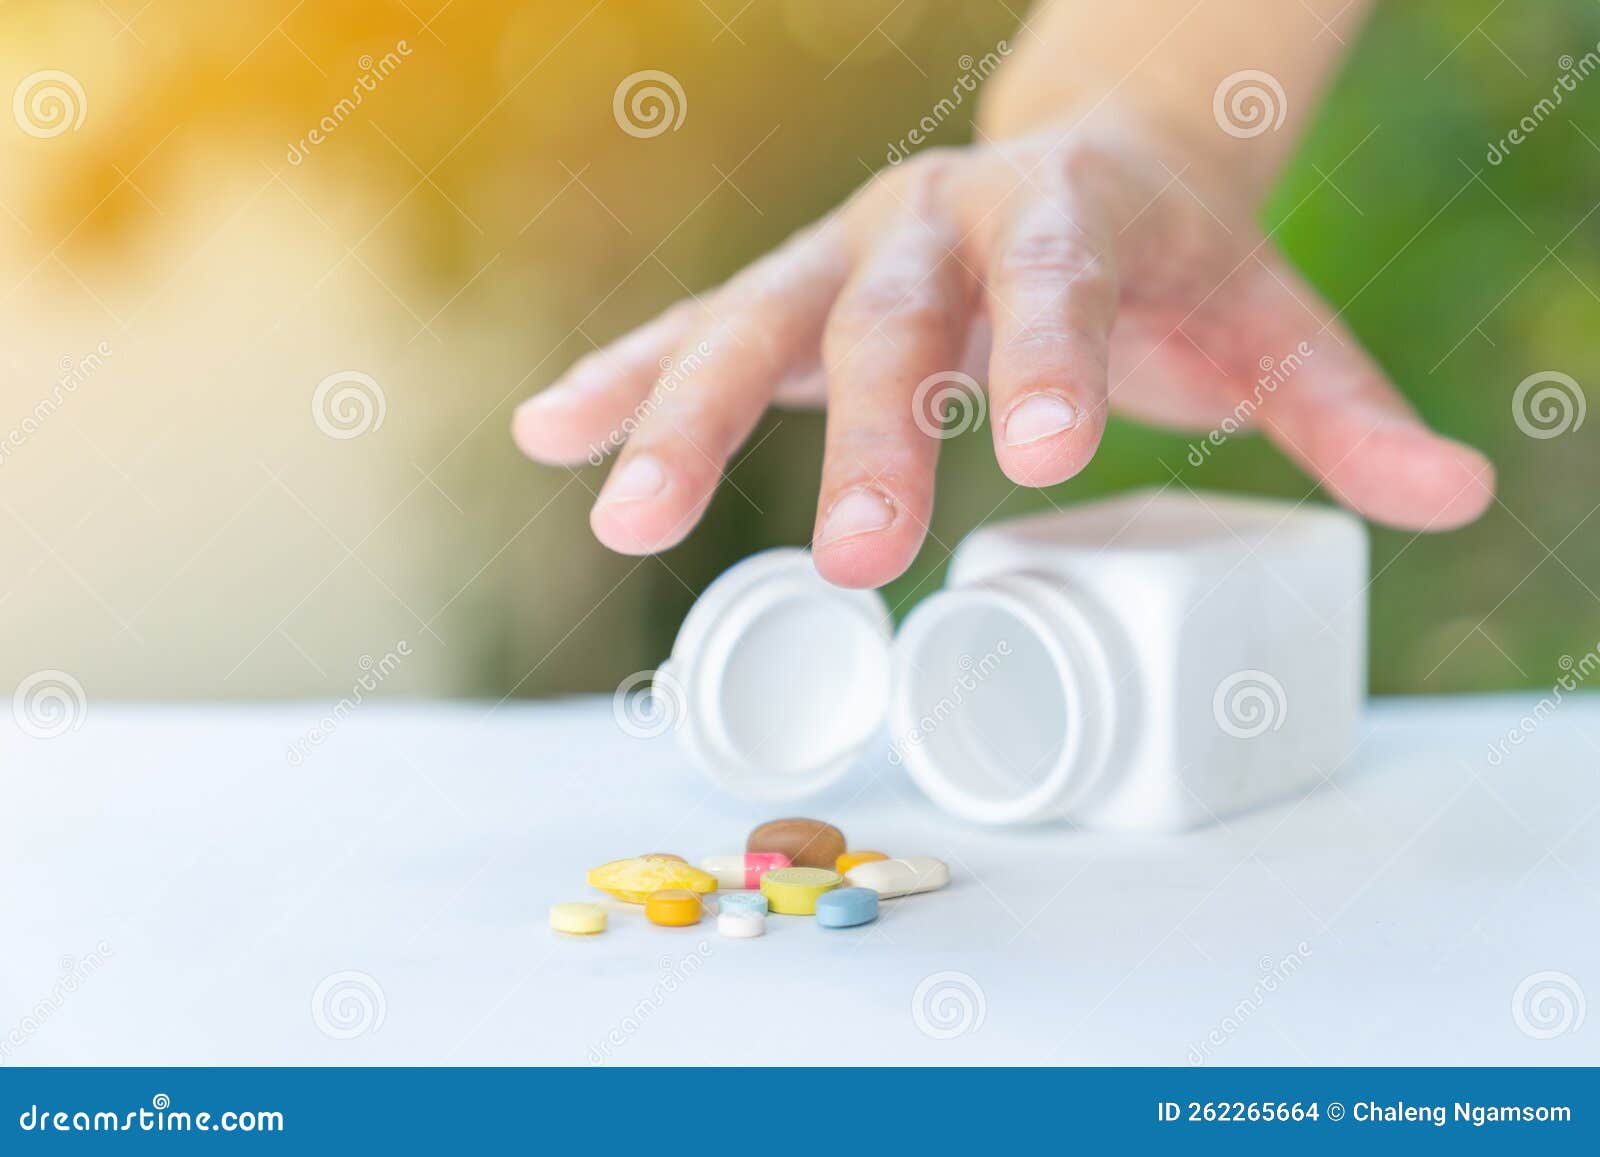 close up hand pick up drug